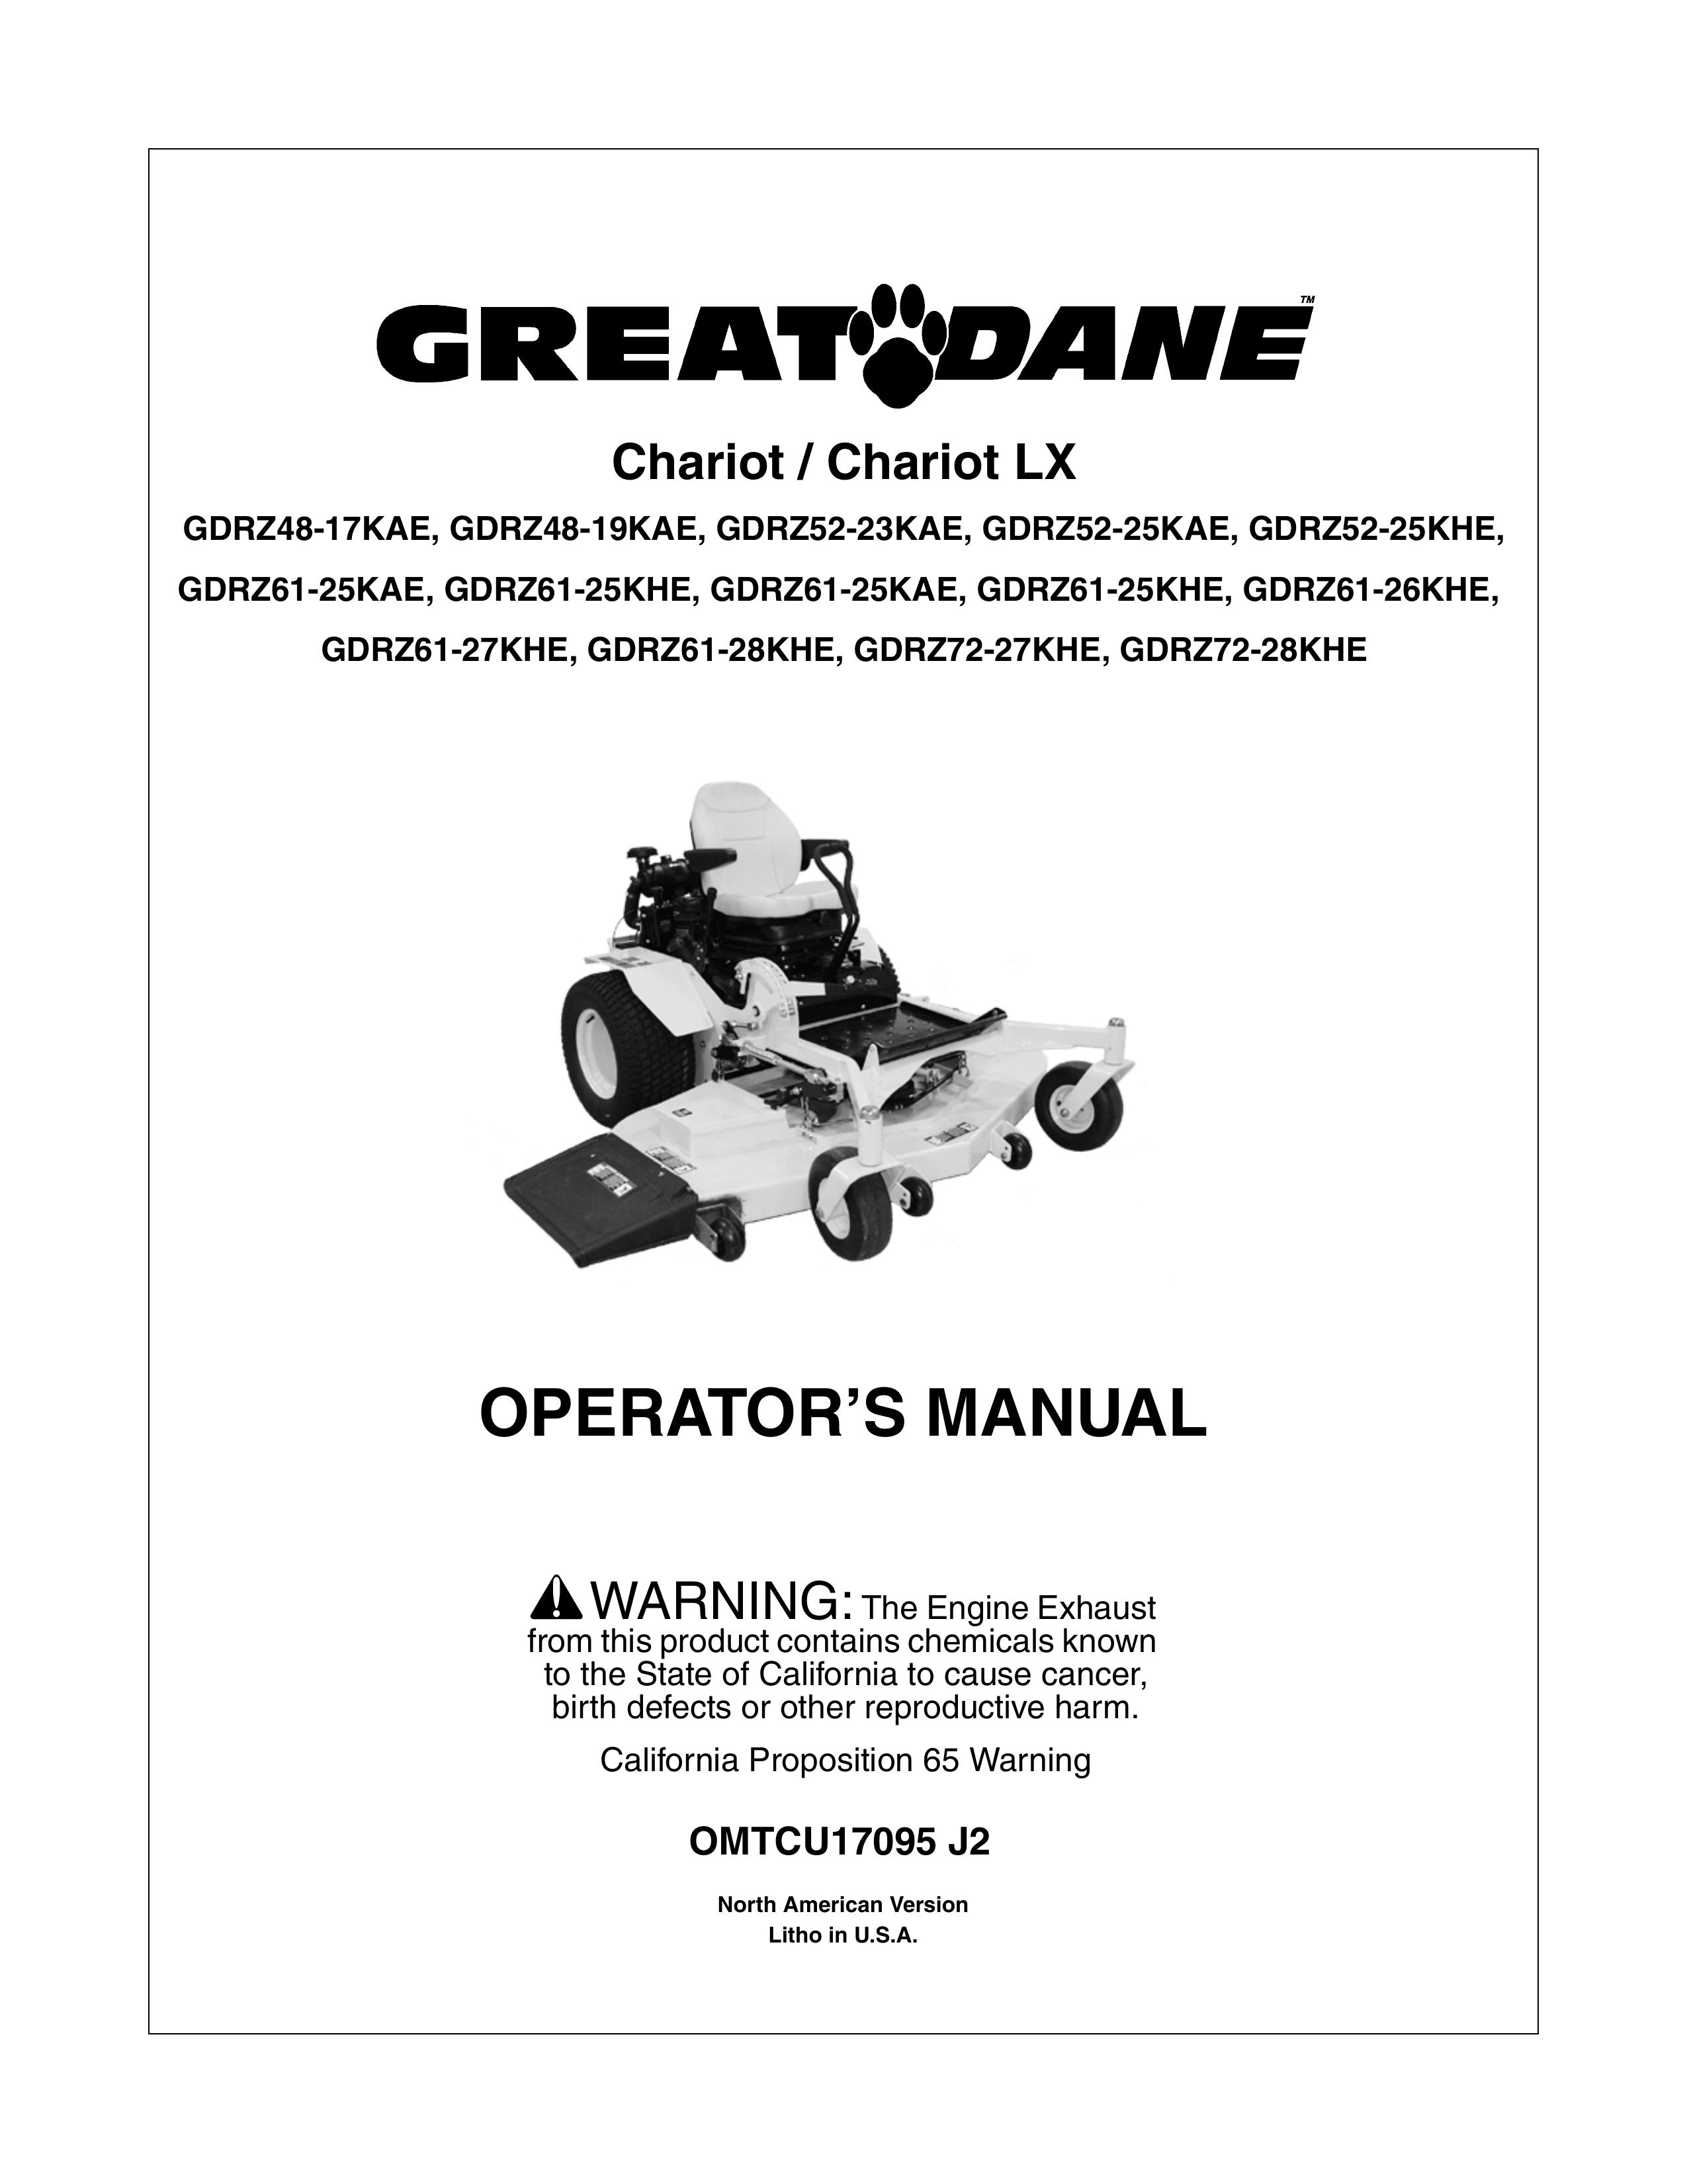 Great Dane GDRZ48-19KAE Lawn Mower User Manual